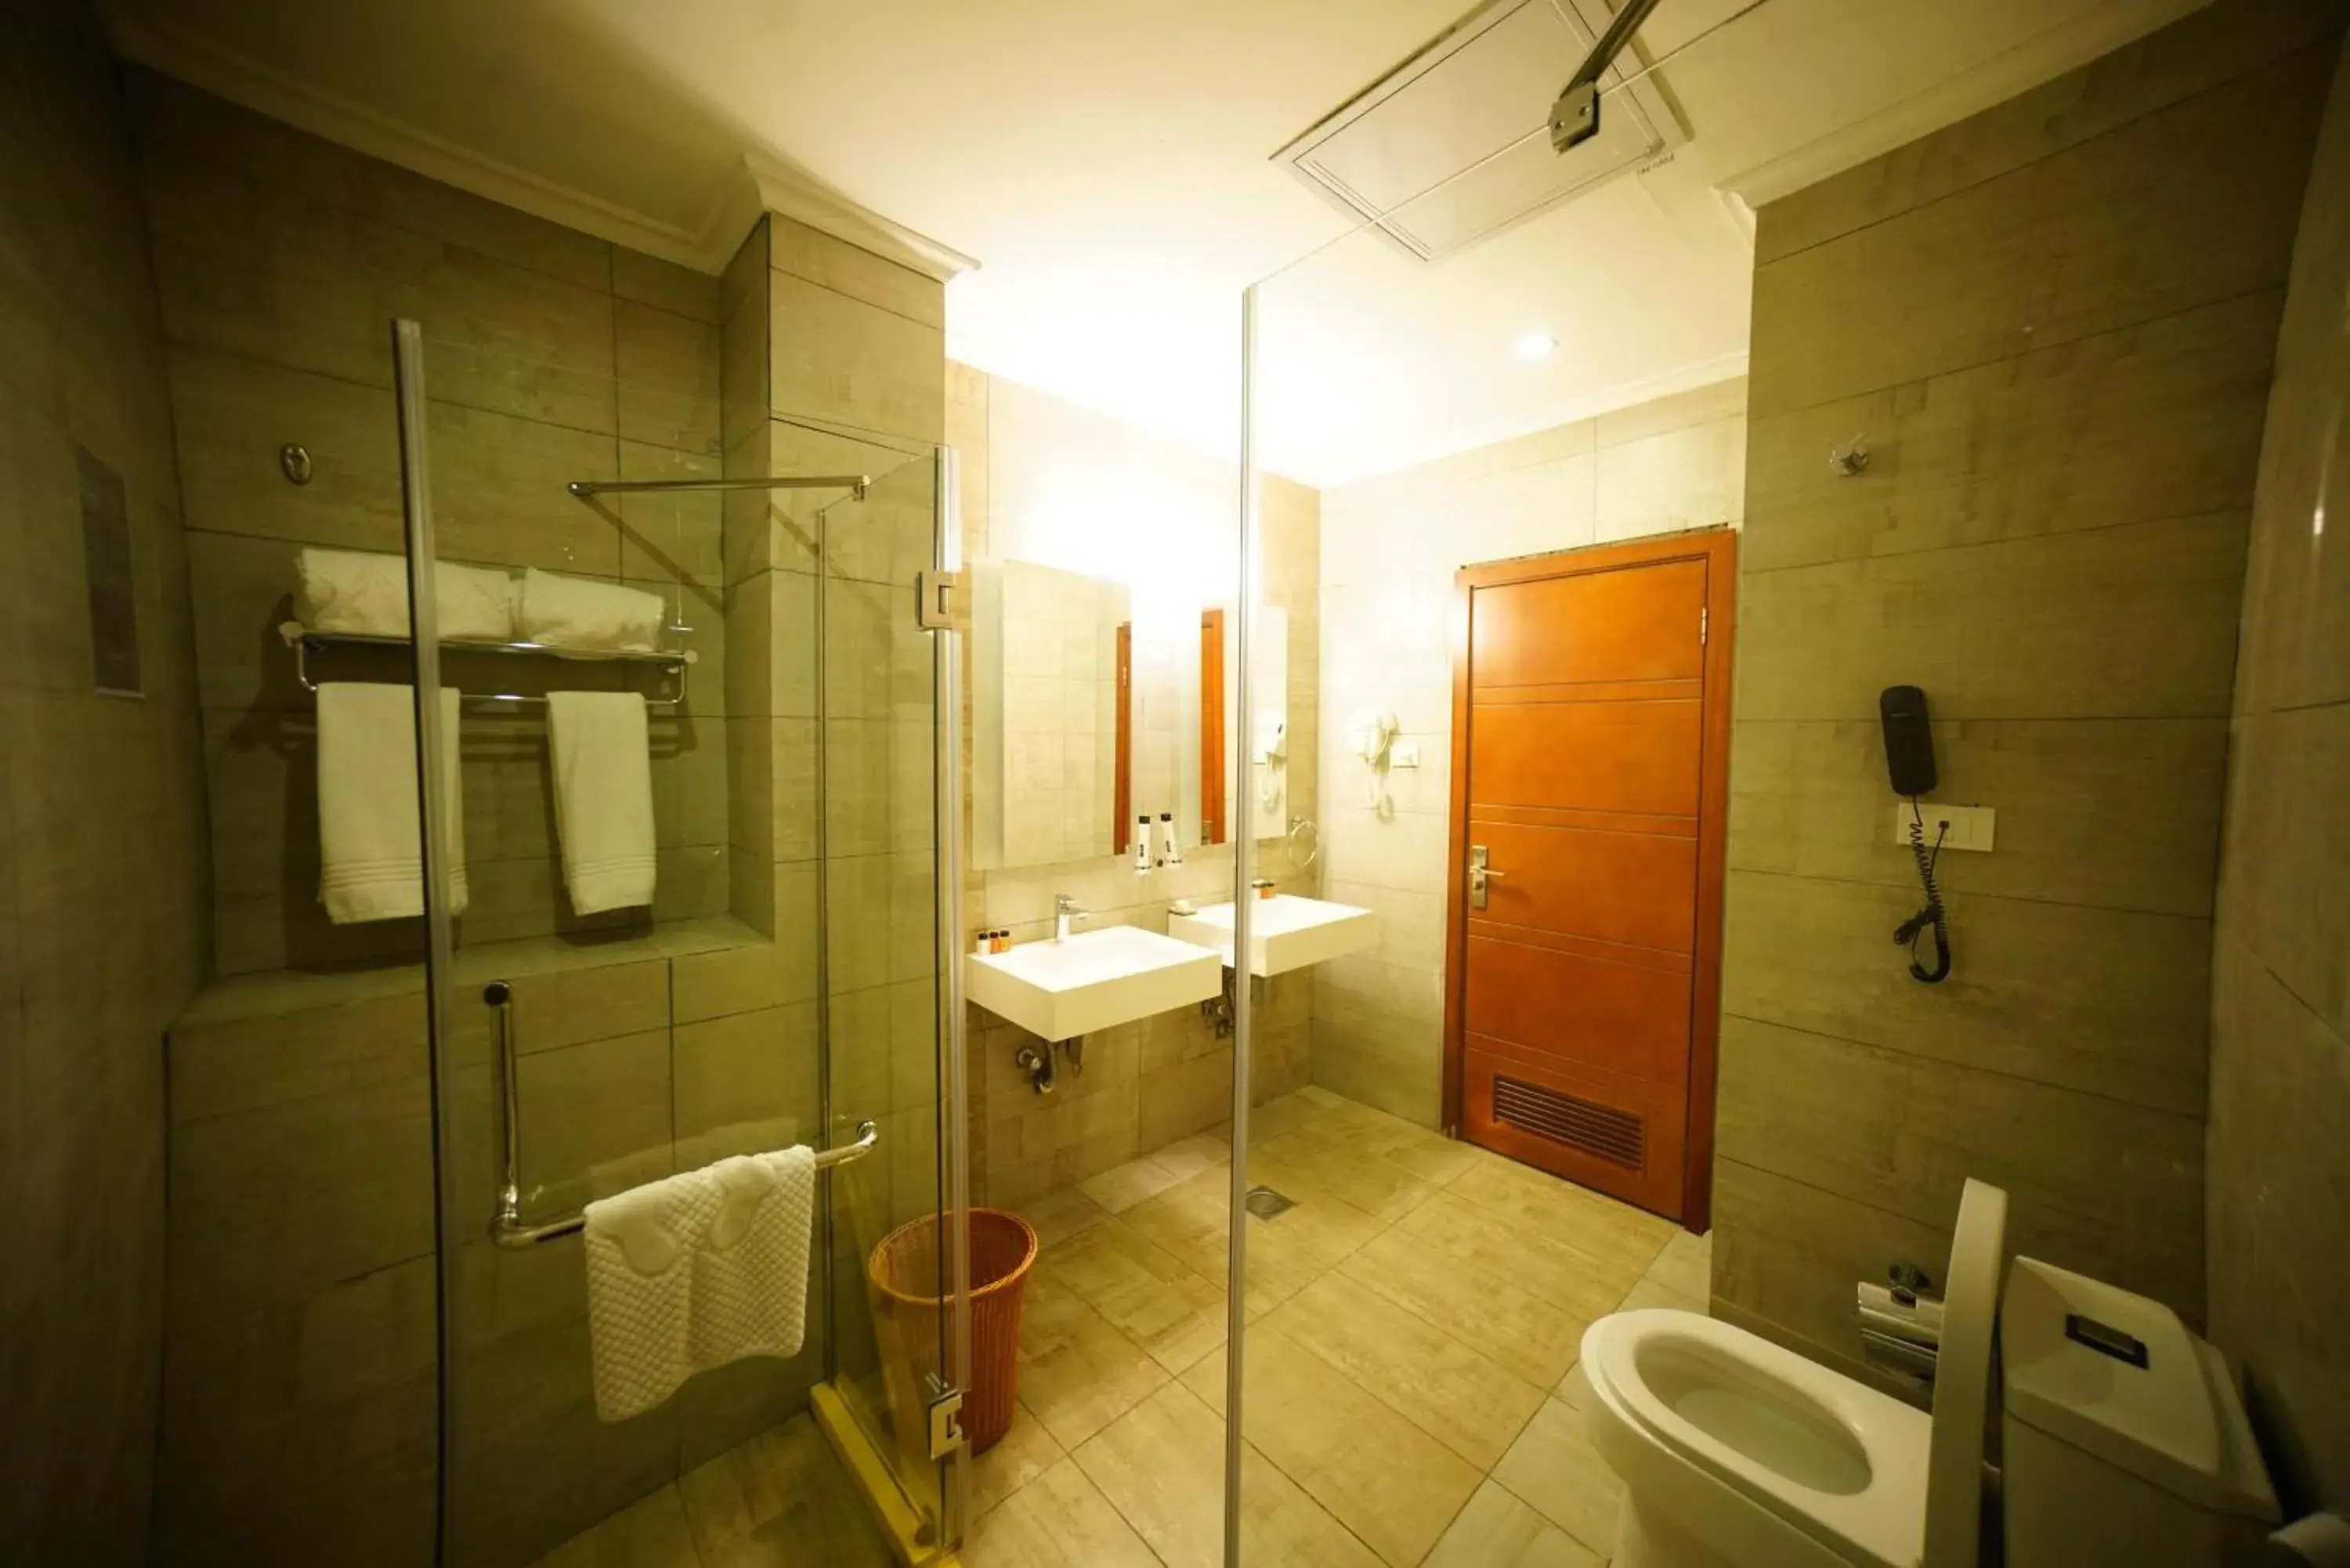 Toilet, Bathroom in Mado Hotel